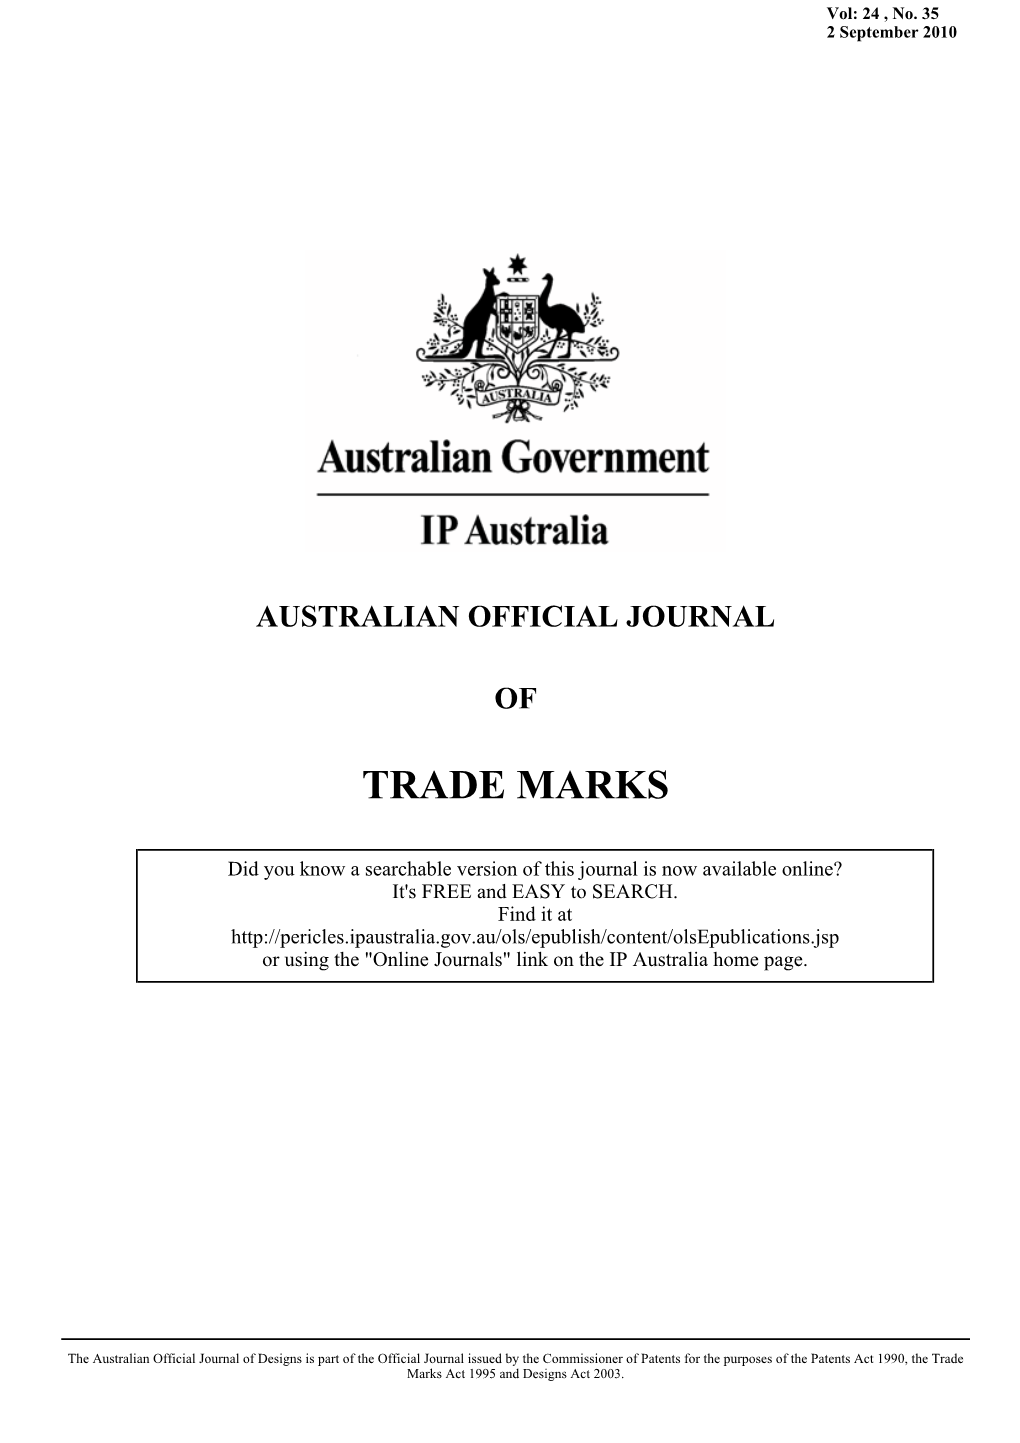 AUSTRALIAN OFFICIAL JOURNAL of TRADE MARKS 2 September 2010